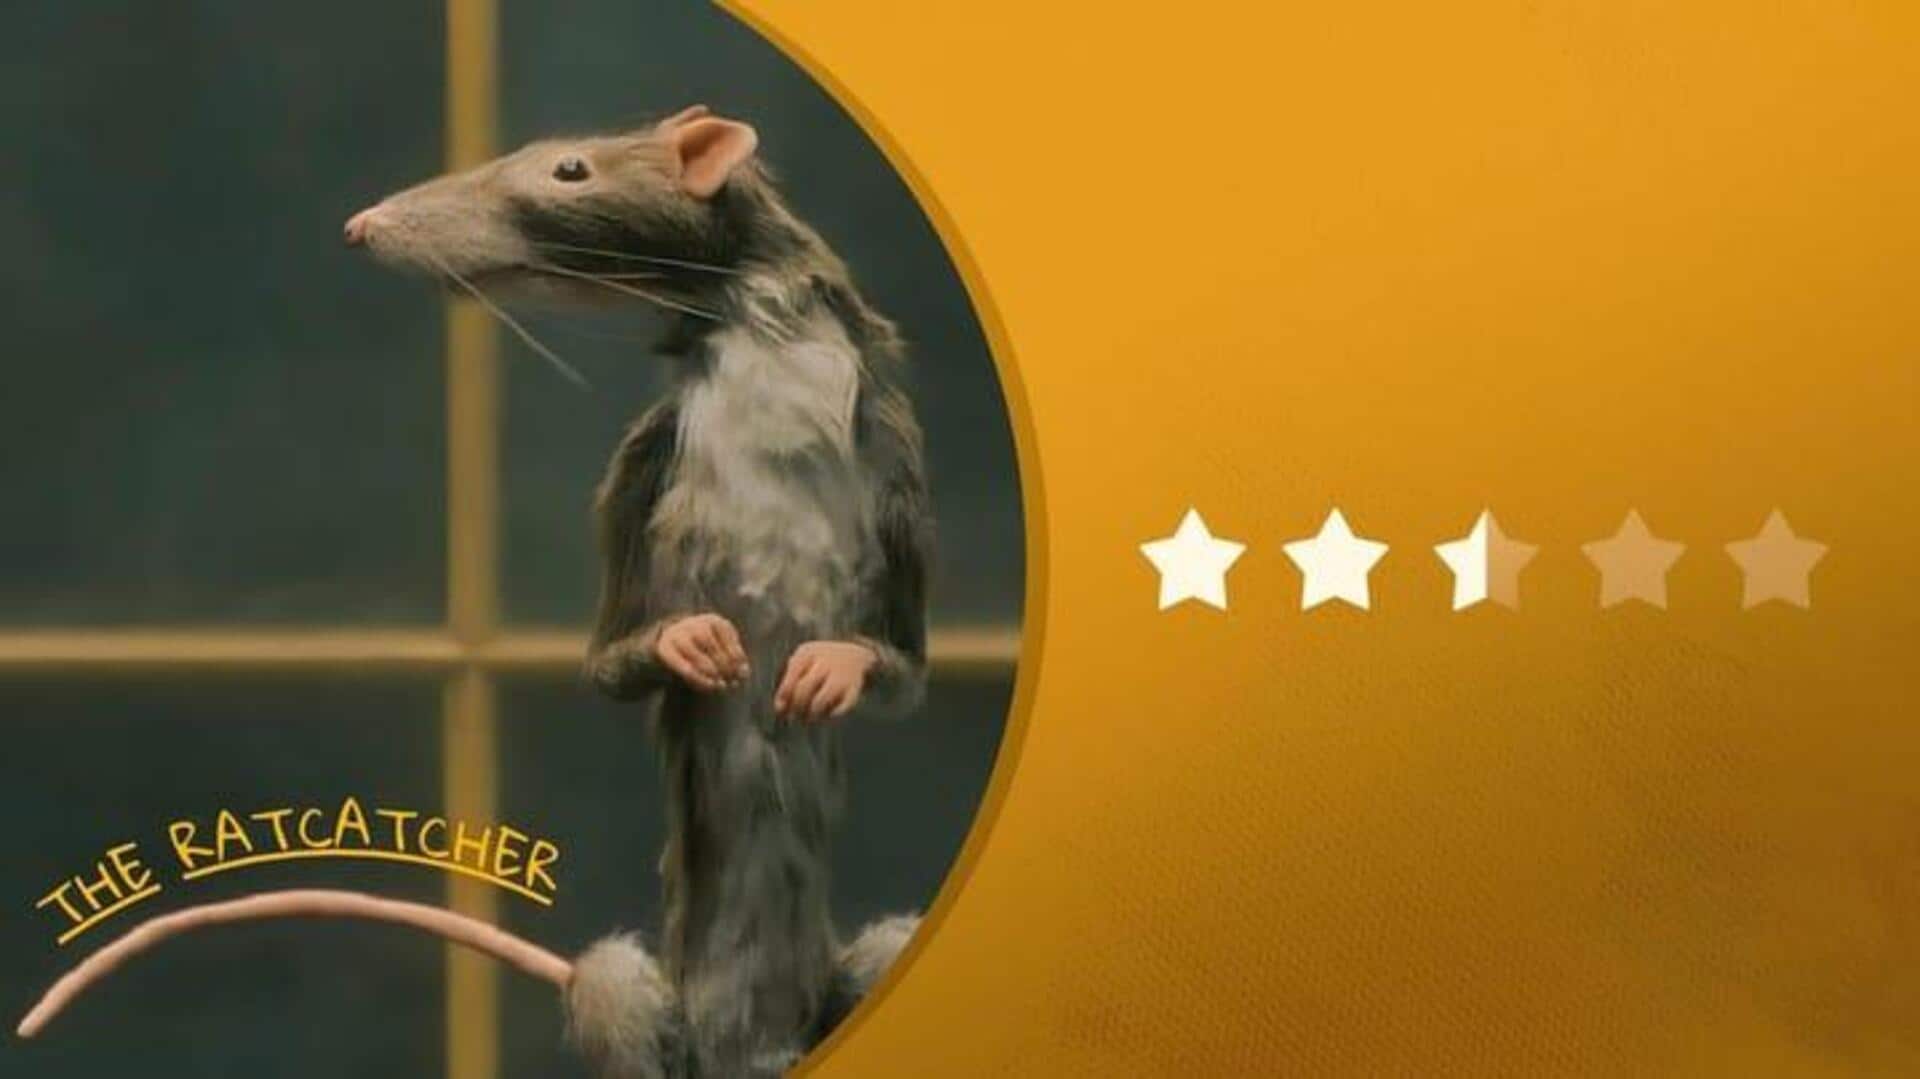 'The Rat Catcher' Dari Wes Anderson: Keterikatan Yang Tidak Konsisten